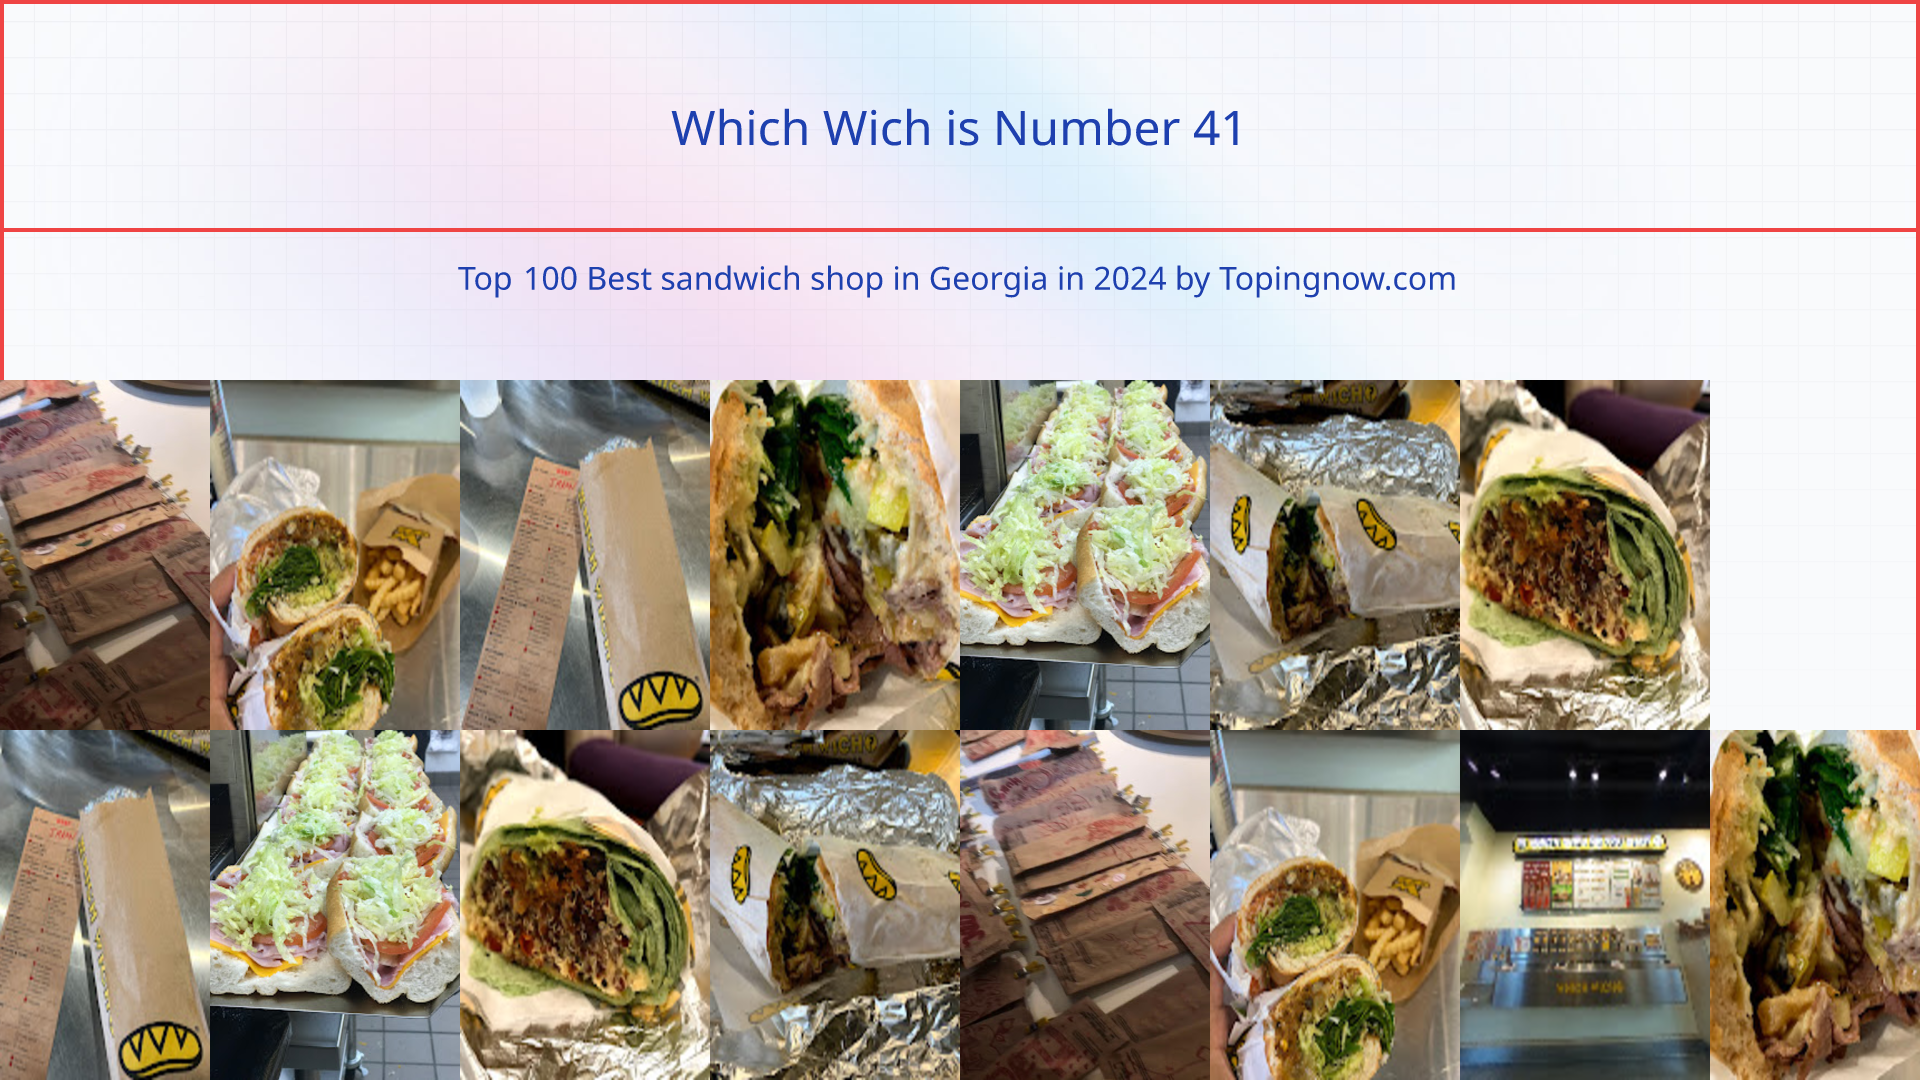 Which Wich: Top 100 Best sandwich shop in Georgia in 2024